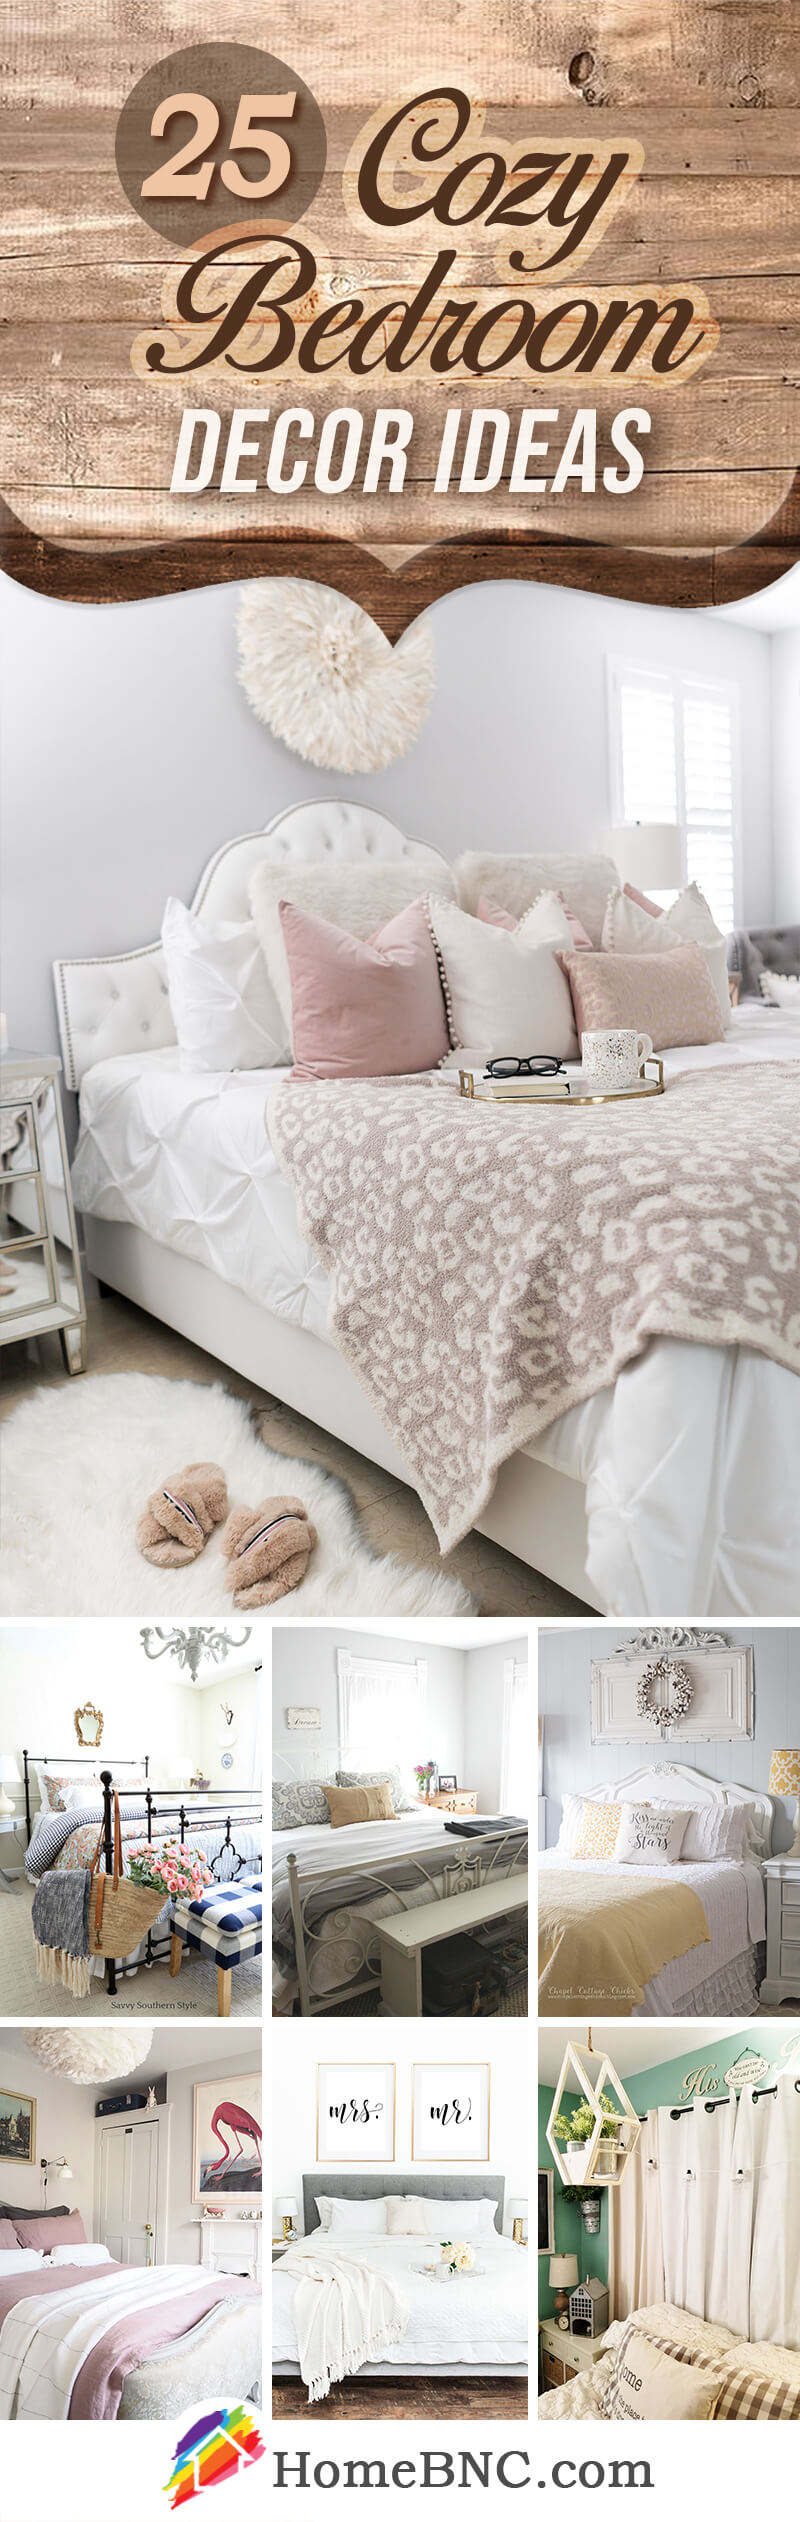 Cozy Bedroom Decor Ideas